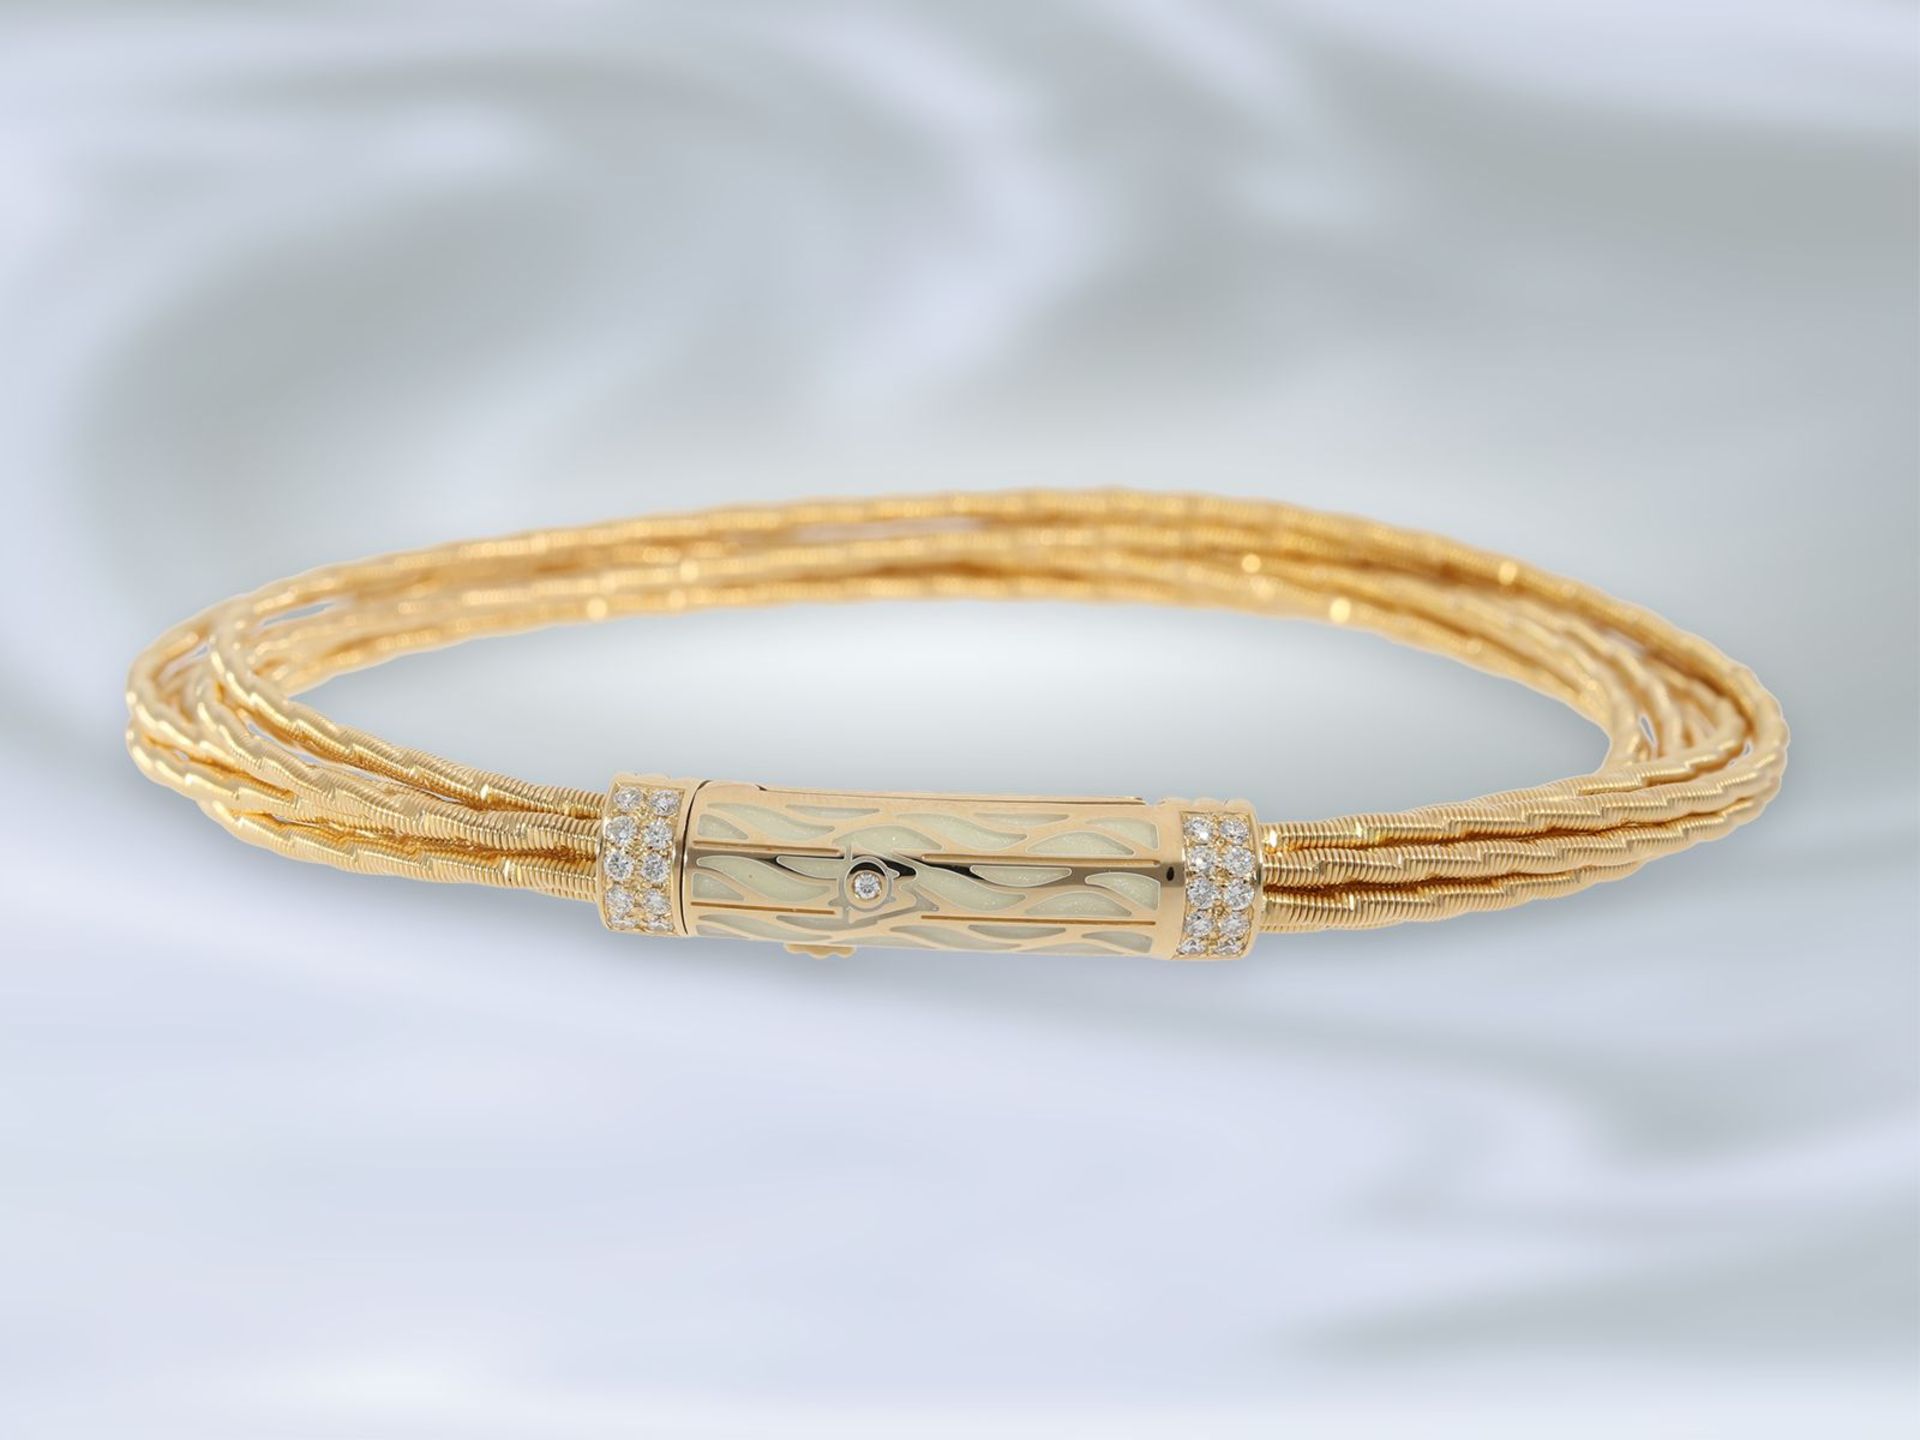 Armband: exquisites, neuwertiges Gold/Emaille-Armband von Wellendorff "Flügel der Nacht", - Bild 4 aus 4